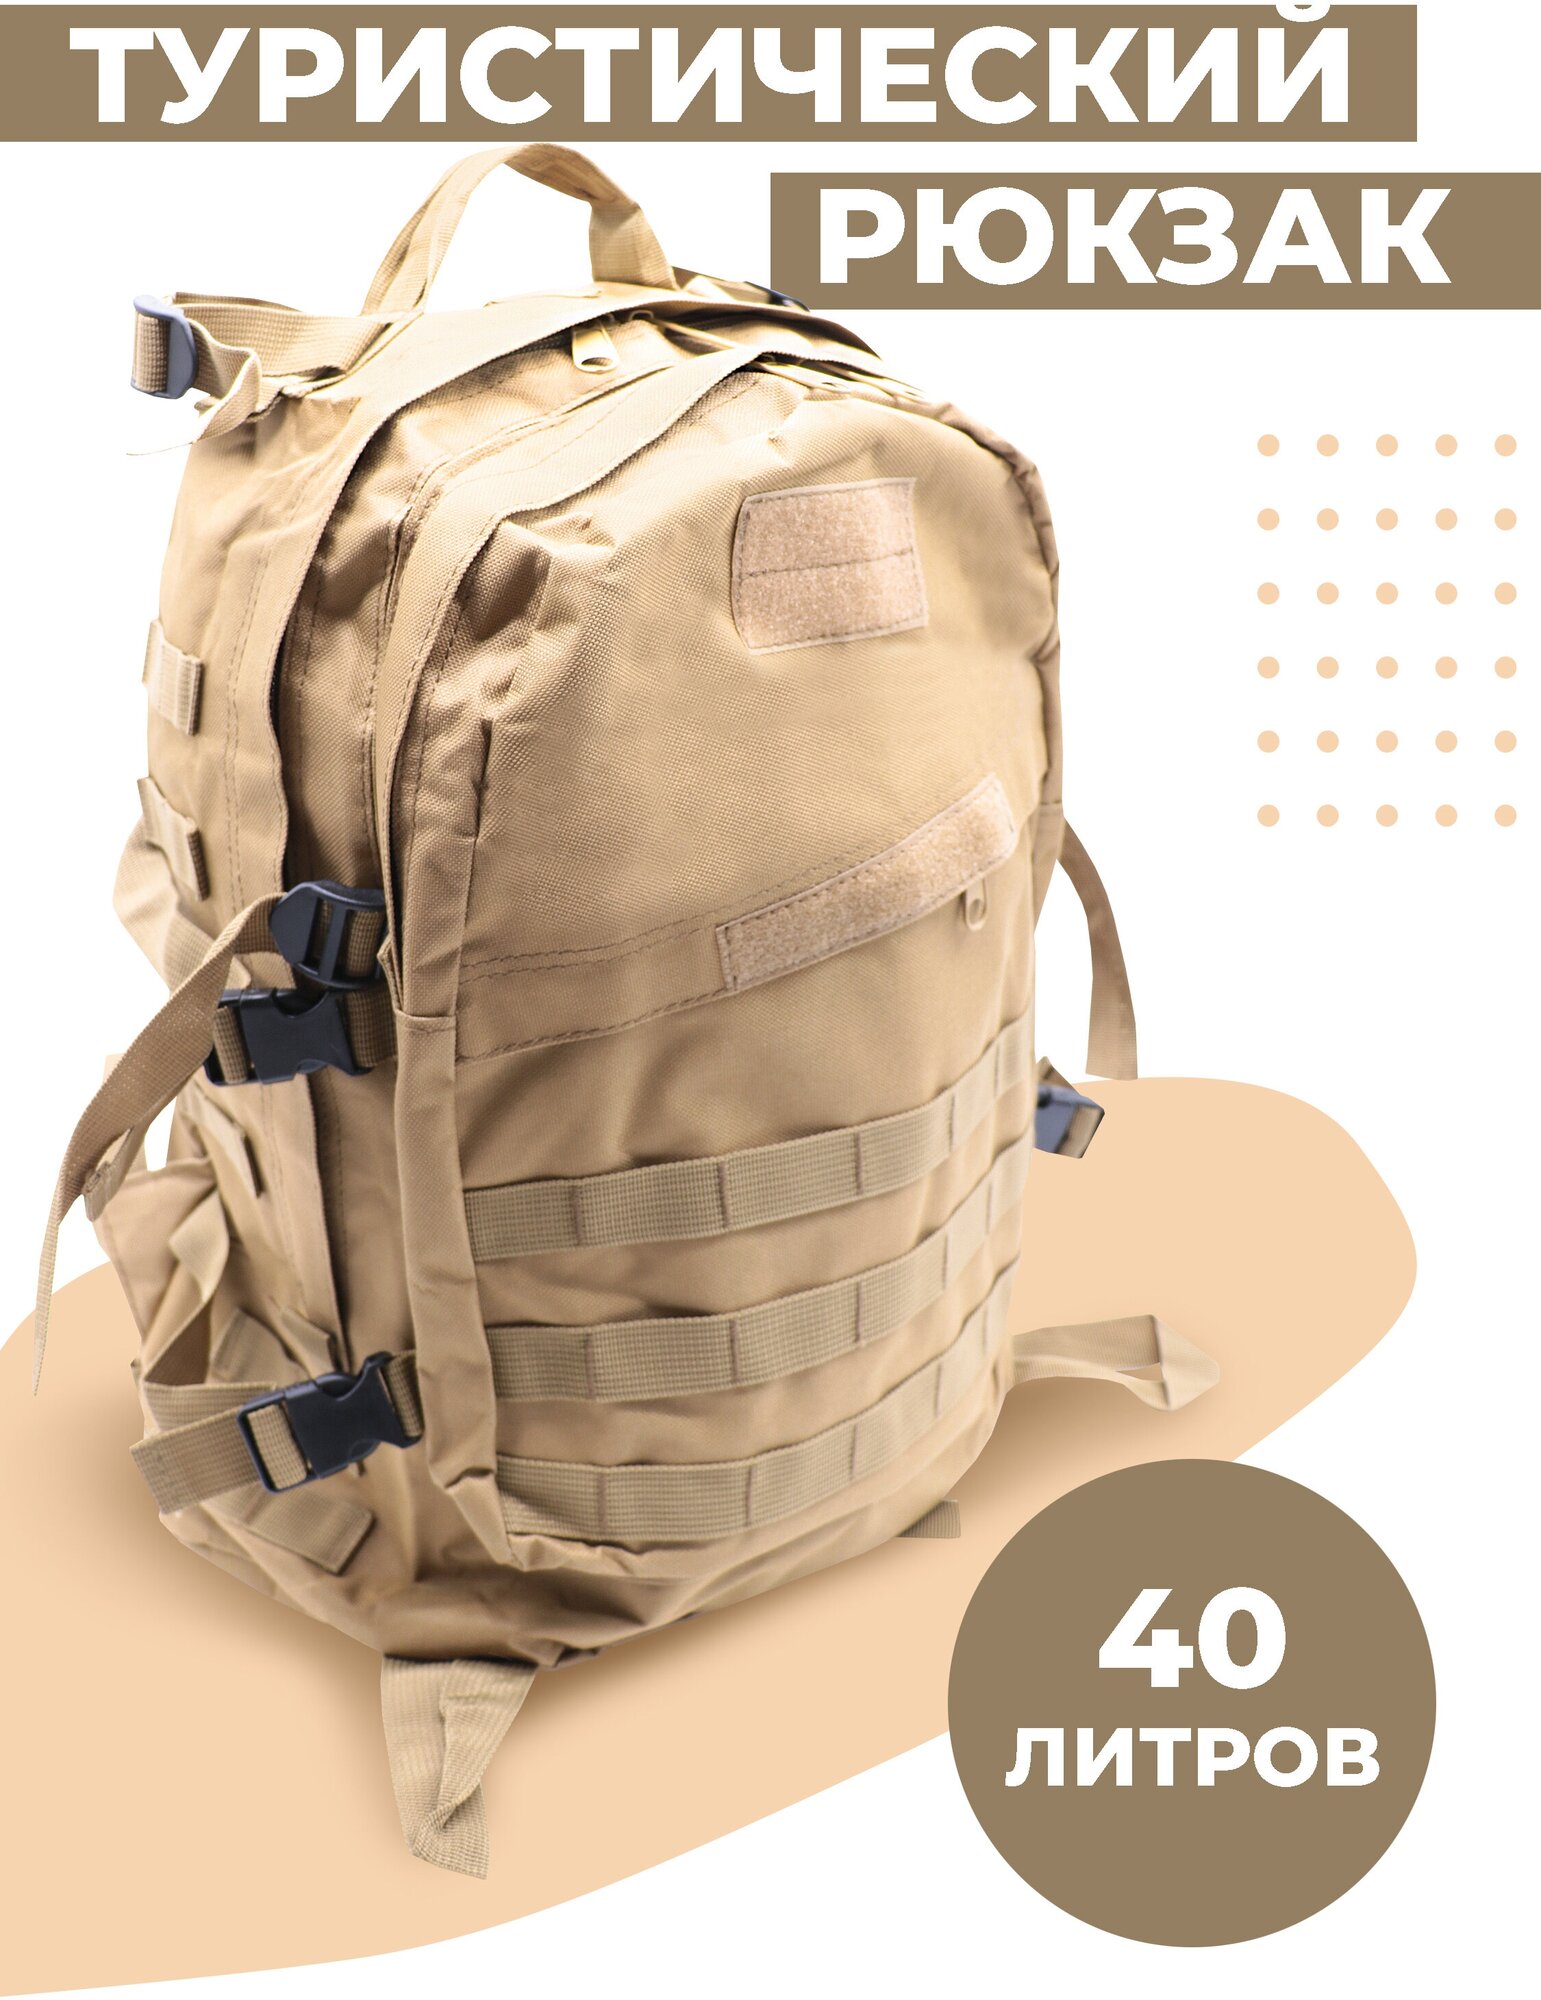 Тактический рюкзак Boomshakalaka, 40л, цвет песочный, для похода, для рыбалки, для охоты